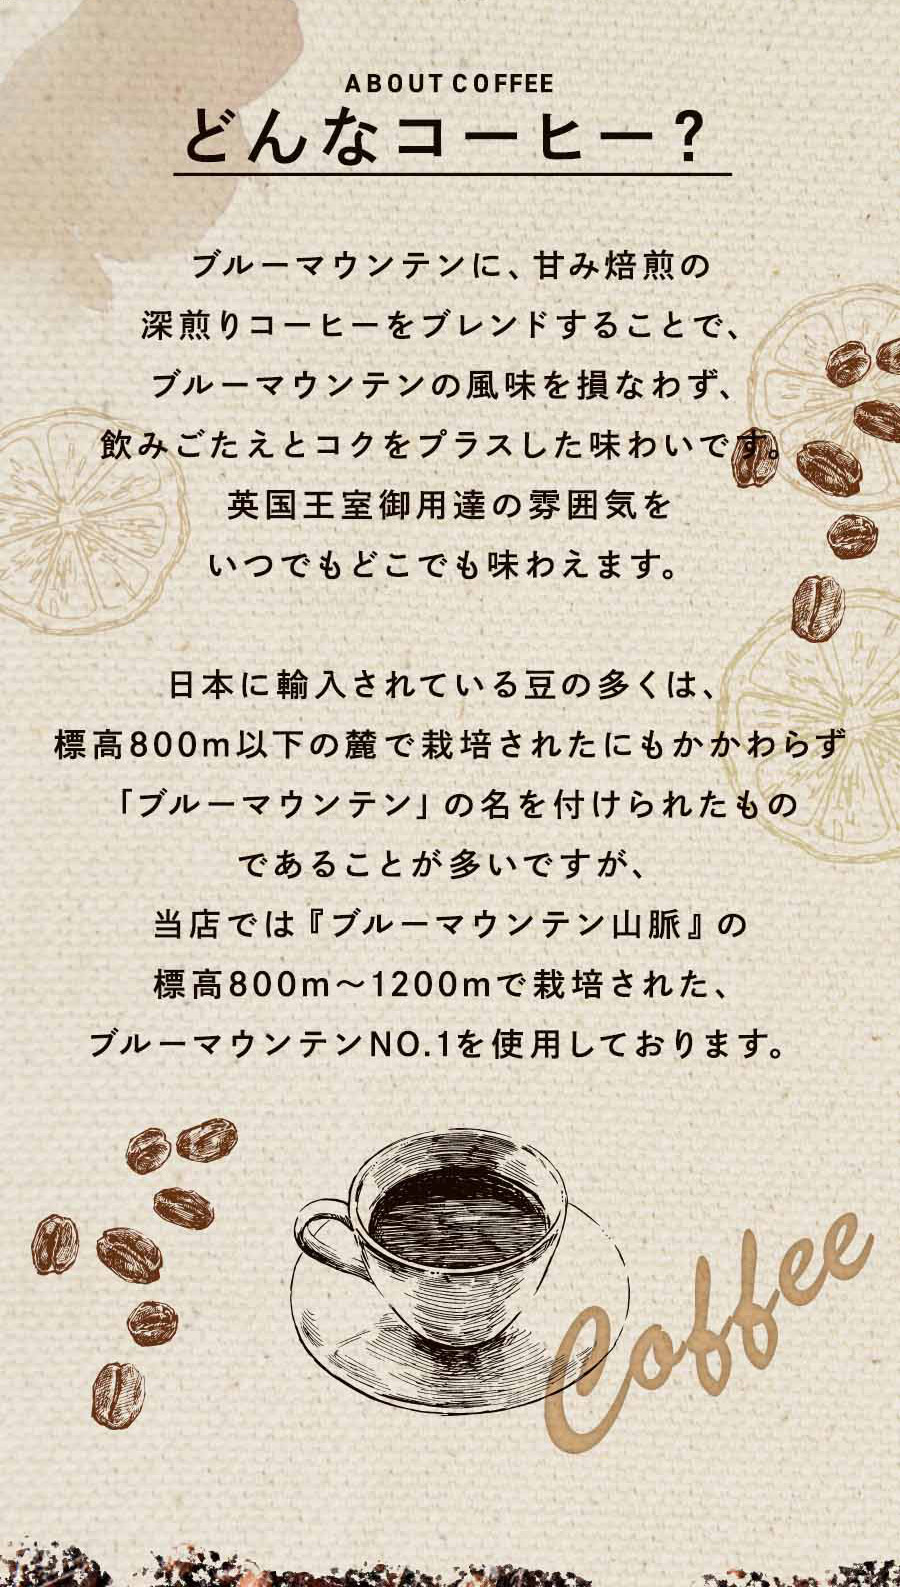 ブルーマウンテンに、甘み焙煎の深煎りコーヒーをブレンドすることで、ブルーマウンテンの風味を損なわず、飲みごたえとコクをプラスした味わいです。英国王室御用達の雰囲気をいつでもどこでも味わえます。日本に輸入されている豆の多くは、標高800m以下の麓で栽培されたにもかかわらず「ブルーマウンテン」の名を付けられたものであることが多いですが、当店では『ブルーマウンテン山脈』の標高800m～1200mで栽培された、ブルーマウンテンNO.1を使用しております。 